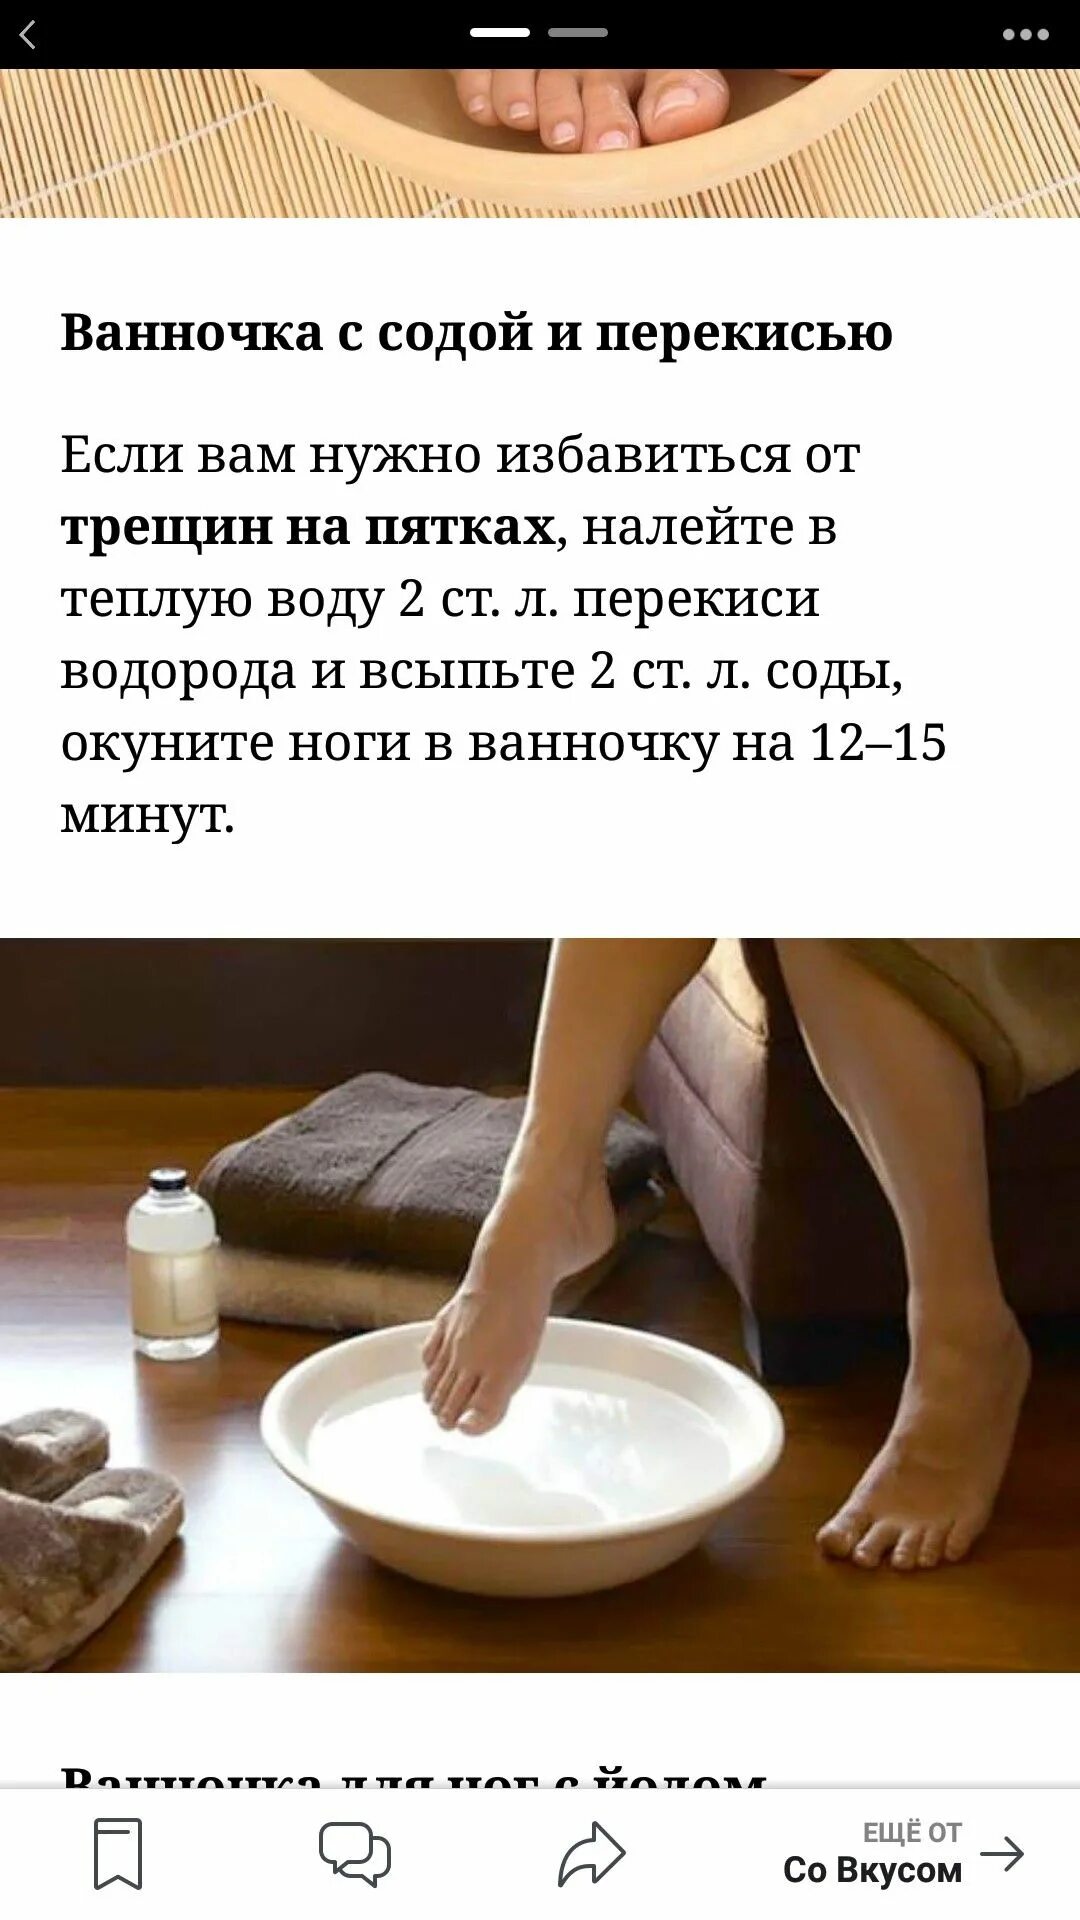 Ванночка для ног. Ванночки для ног с содой и солью и йодом. Ванночки для ног с содой и солью пропорции. Ванночки для ног с уксусом. Ванночки для ног с йодом